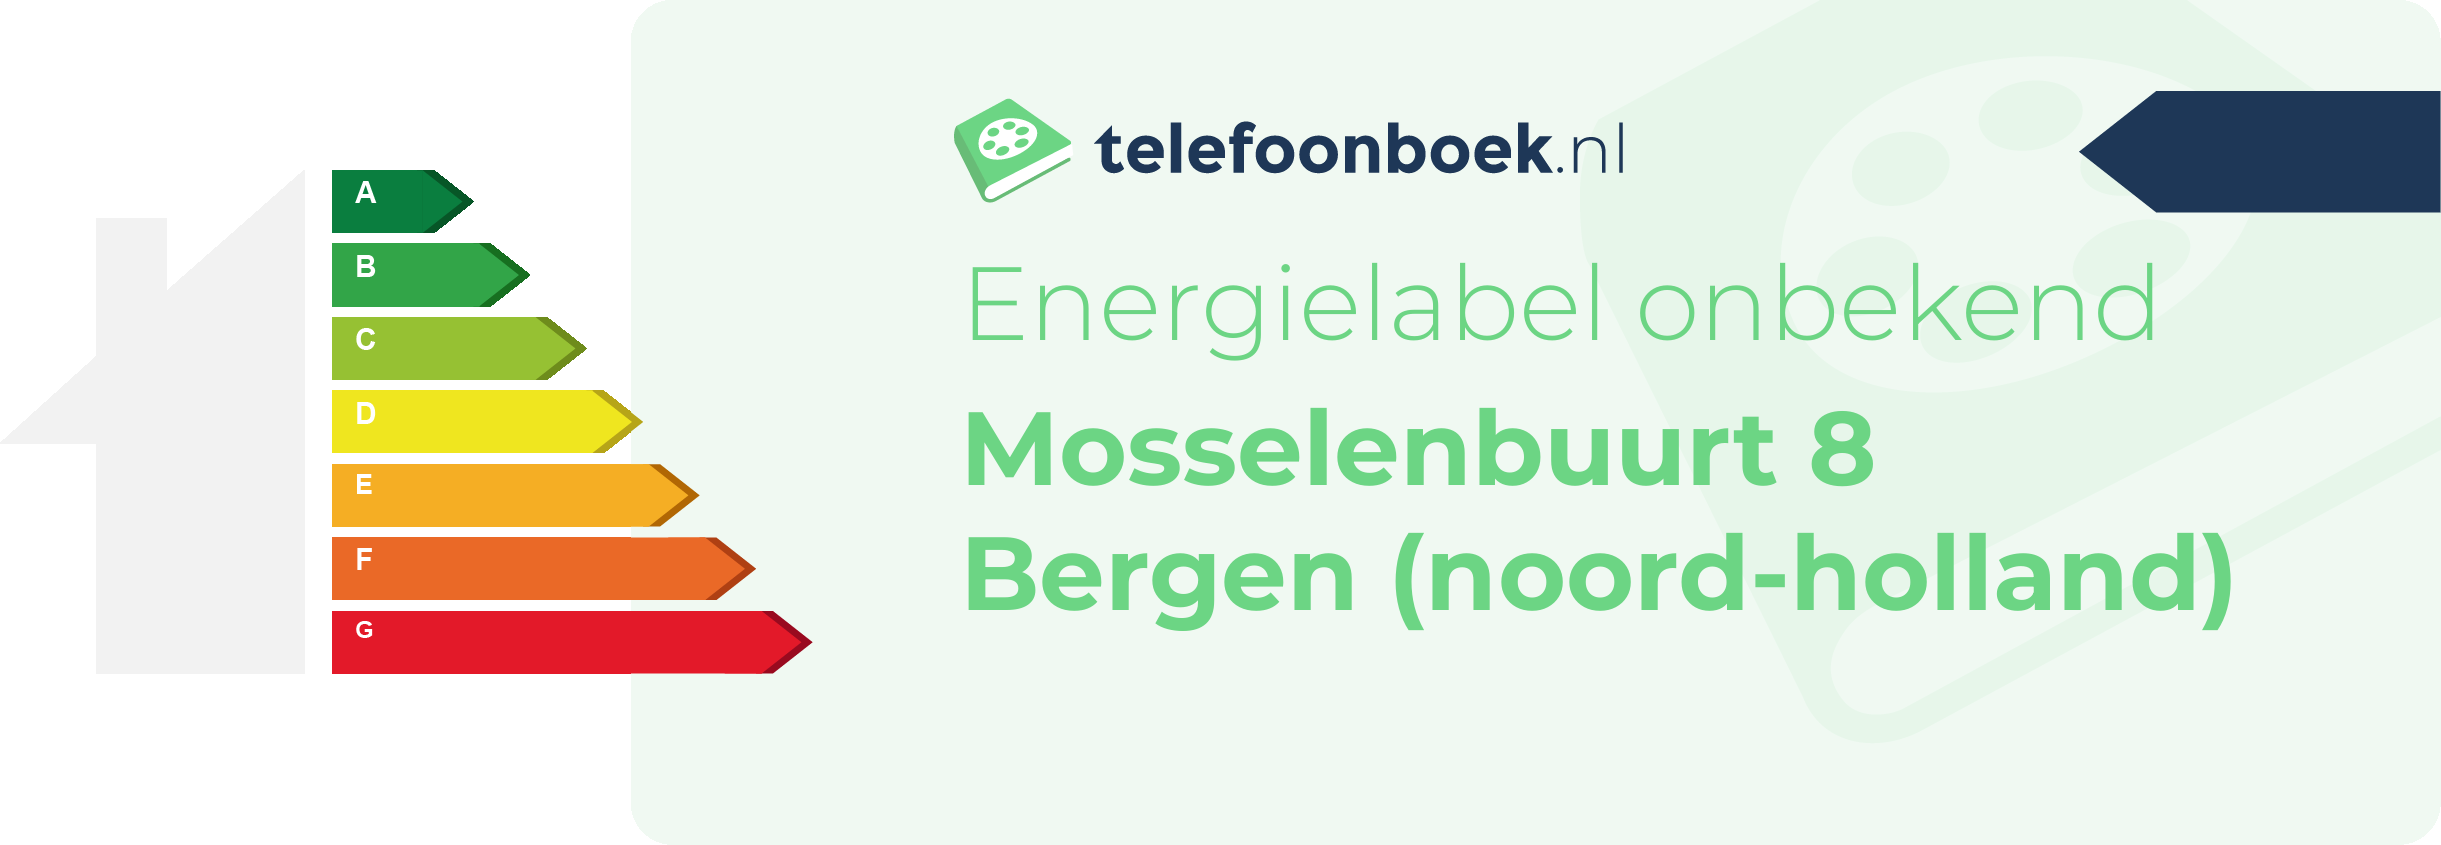 Energielabel Mosselenbuurt 8 Bergen (Noord-Holland)